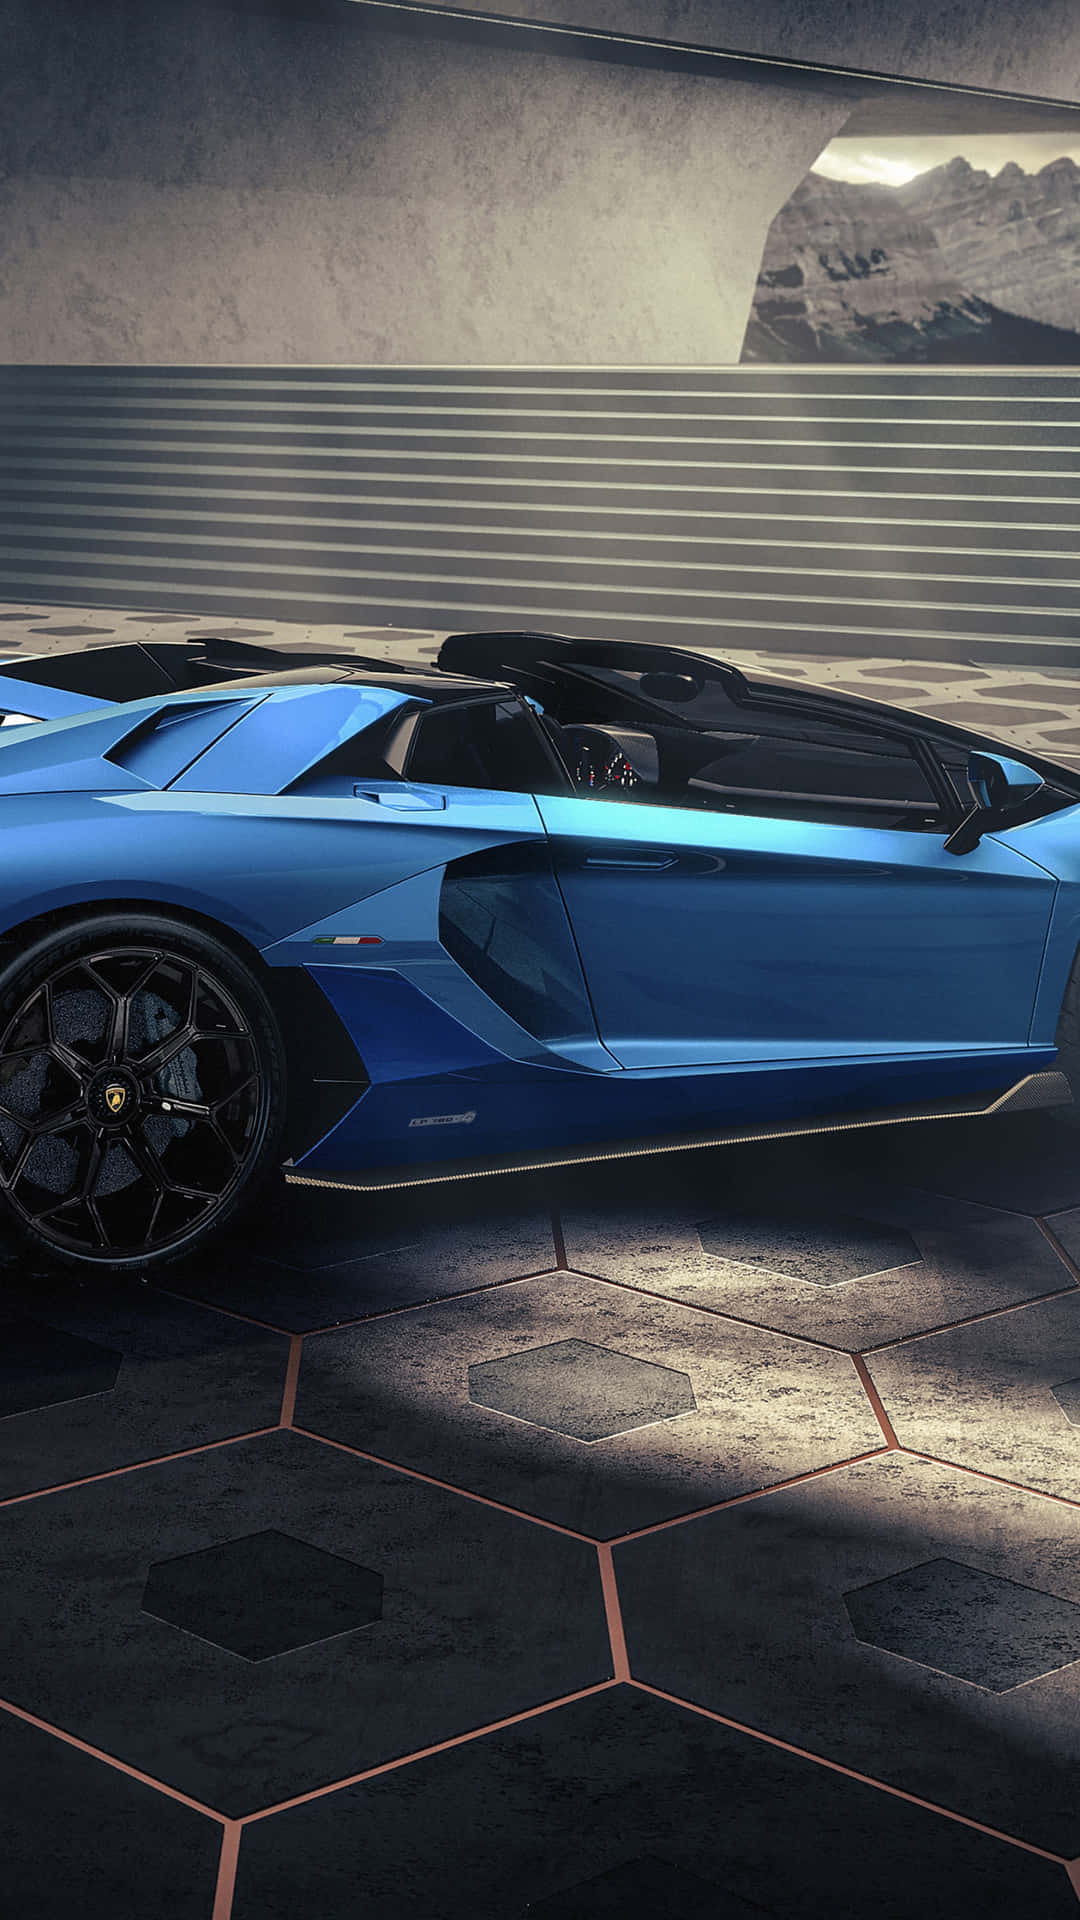 The Luxurious Blue Lamborghini Wallpaper